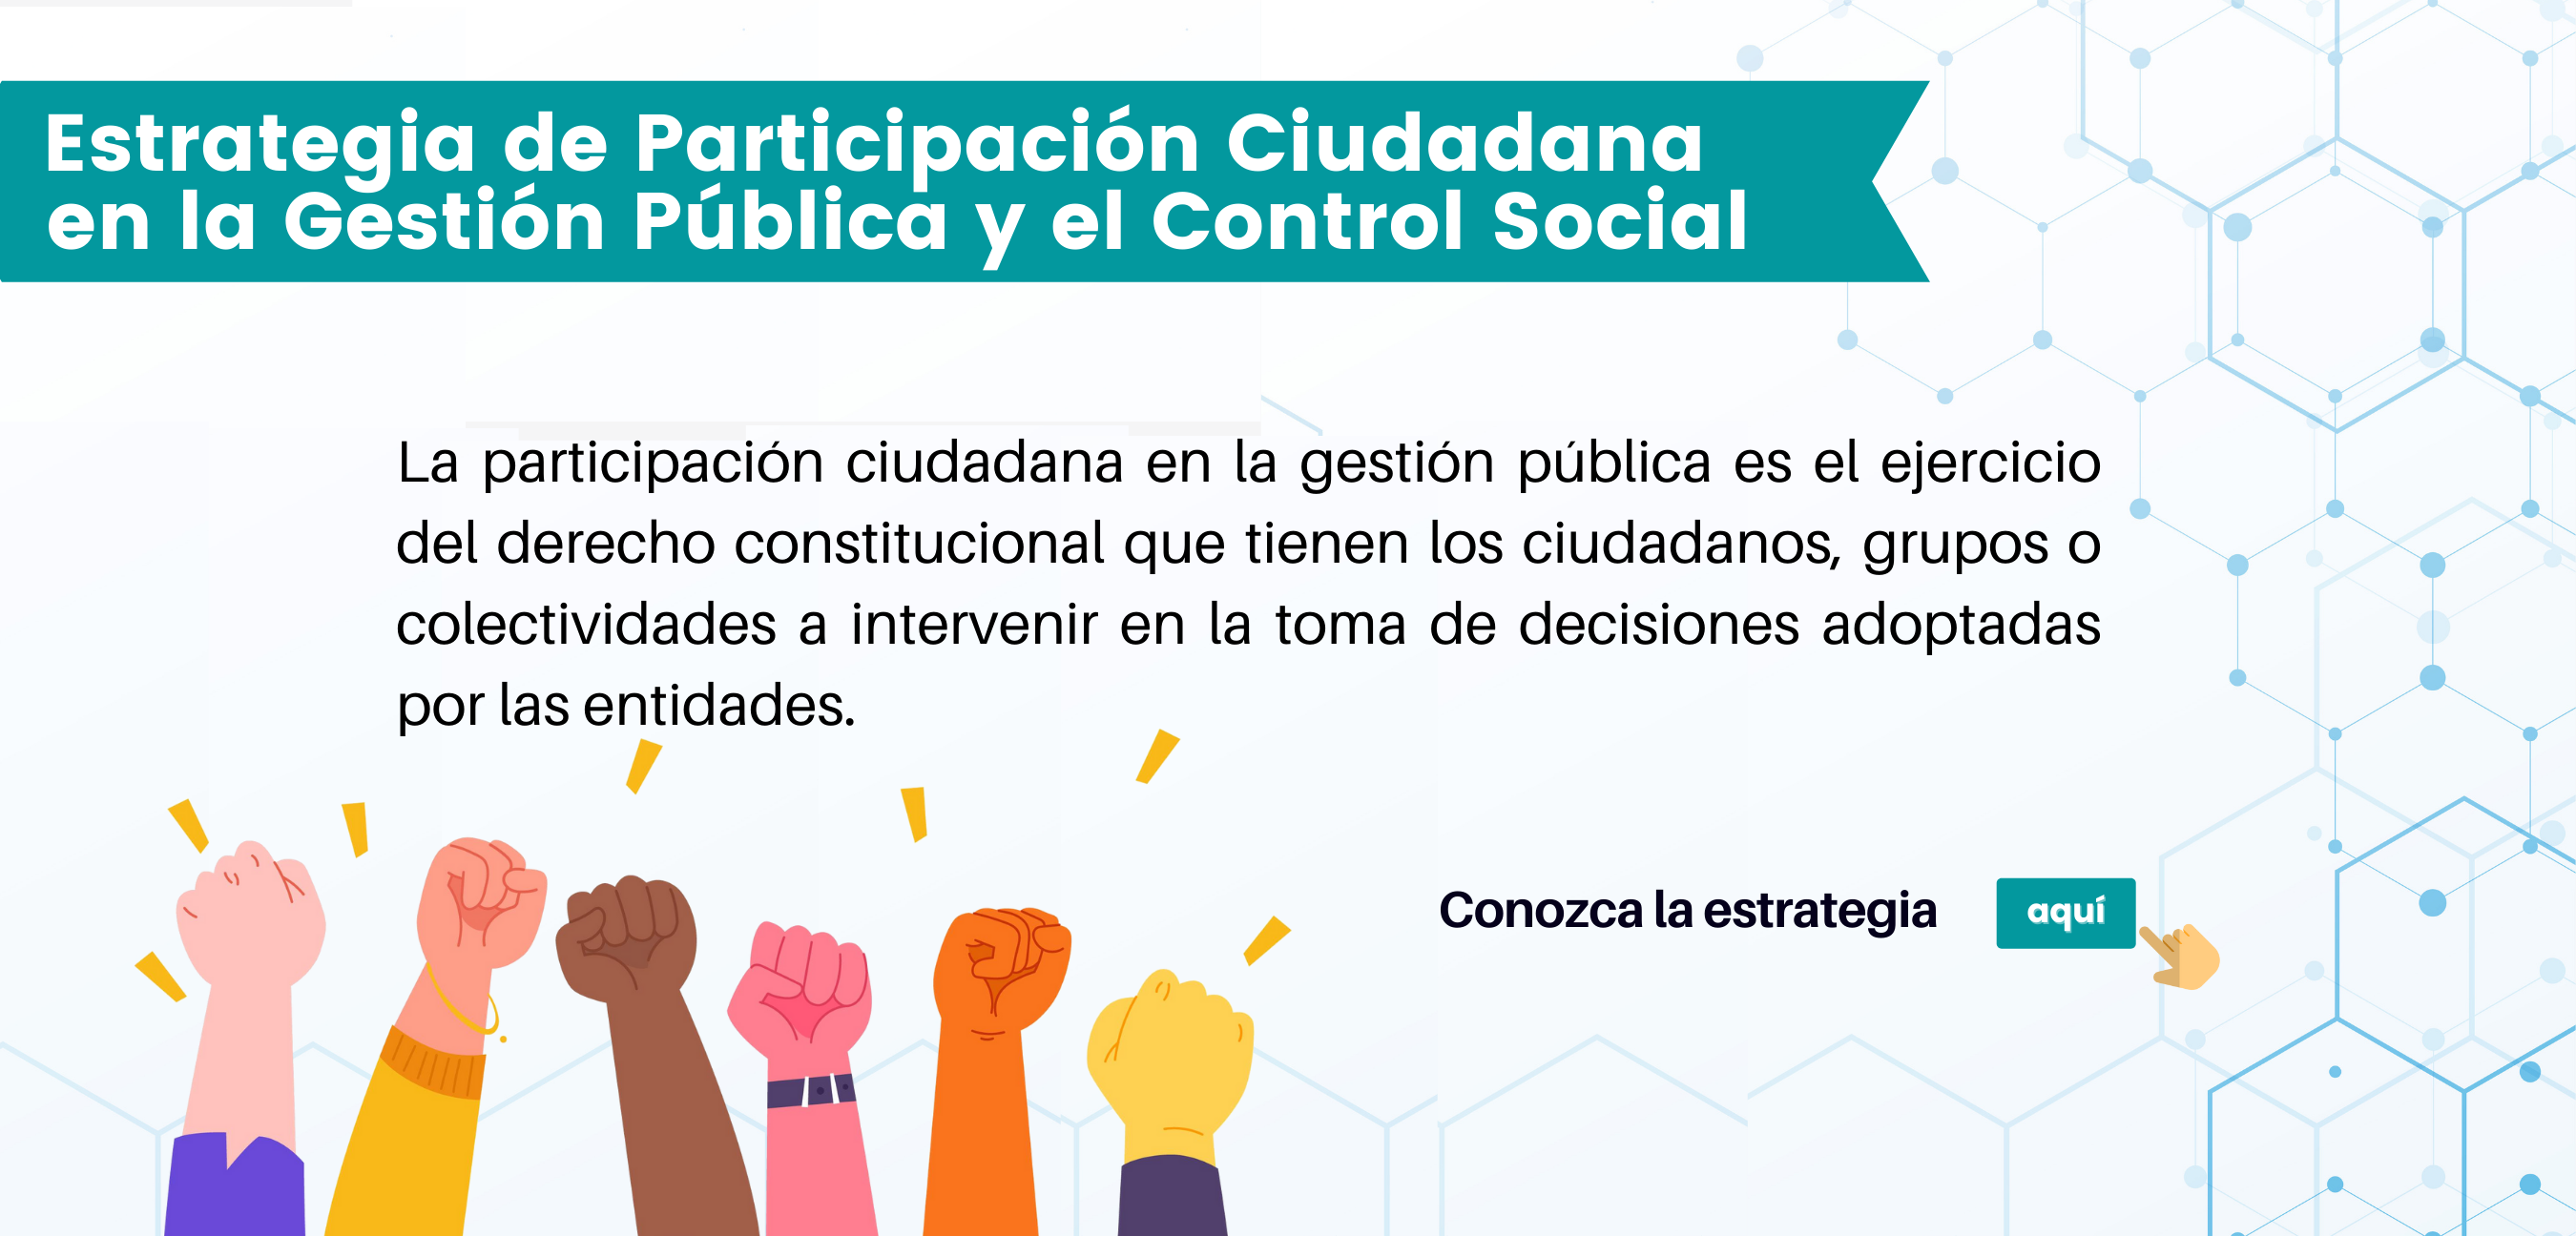 Estrategia de participación ciudadana en la gestión pública y control social